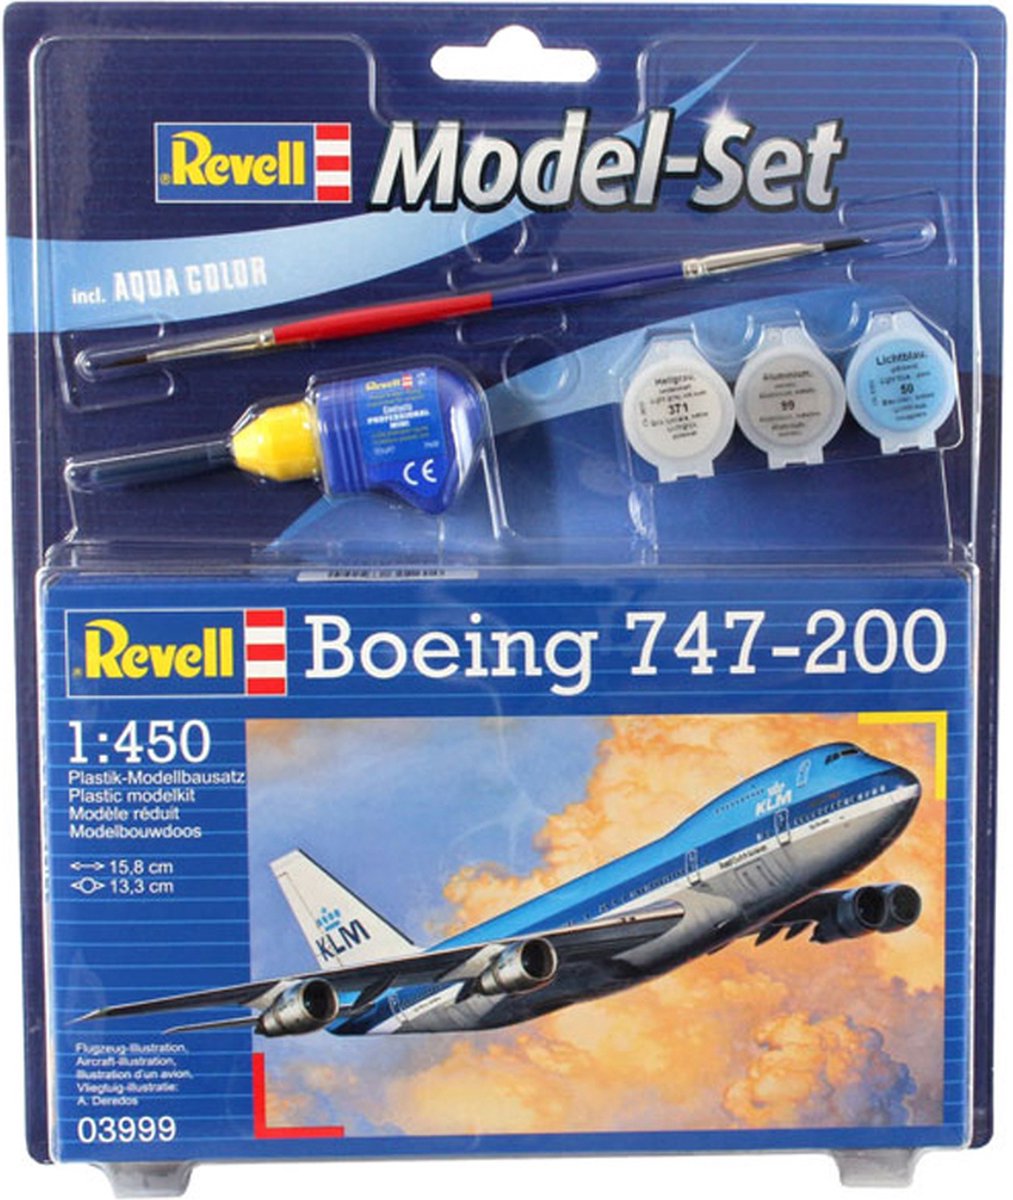 Revell Boeing 747-200 Modelset